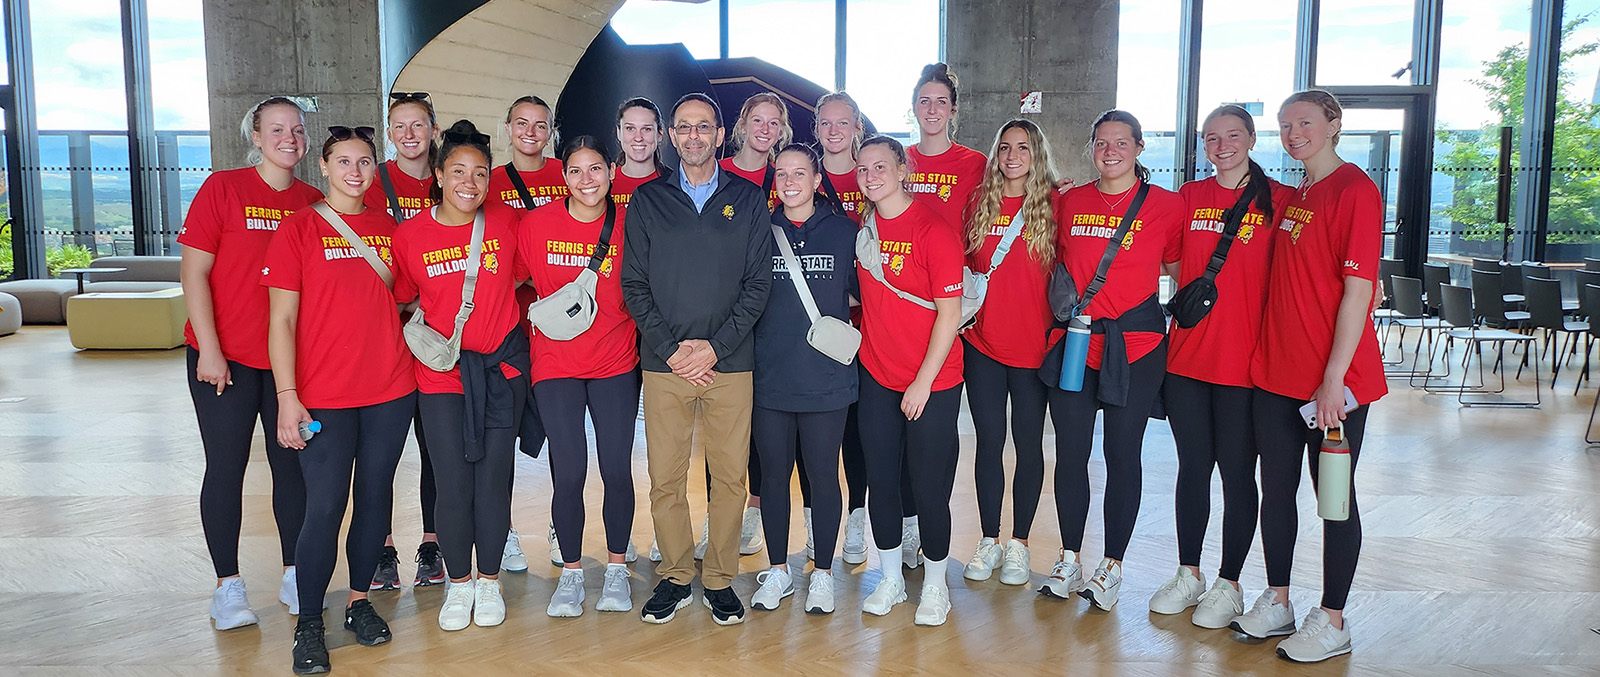 El alumno de Ferris State que vive y trabaja en España disfruta conocer al equipo de voleibol Bulldogs en su viaje al extranjero.